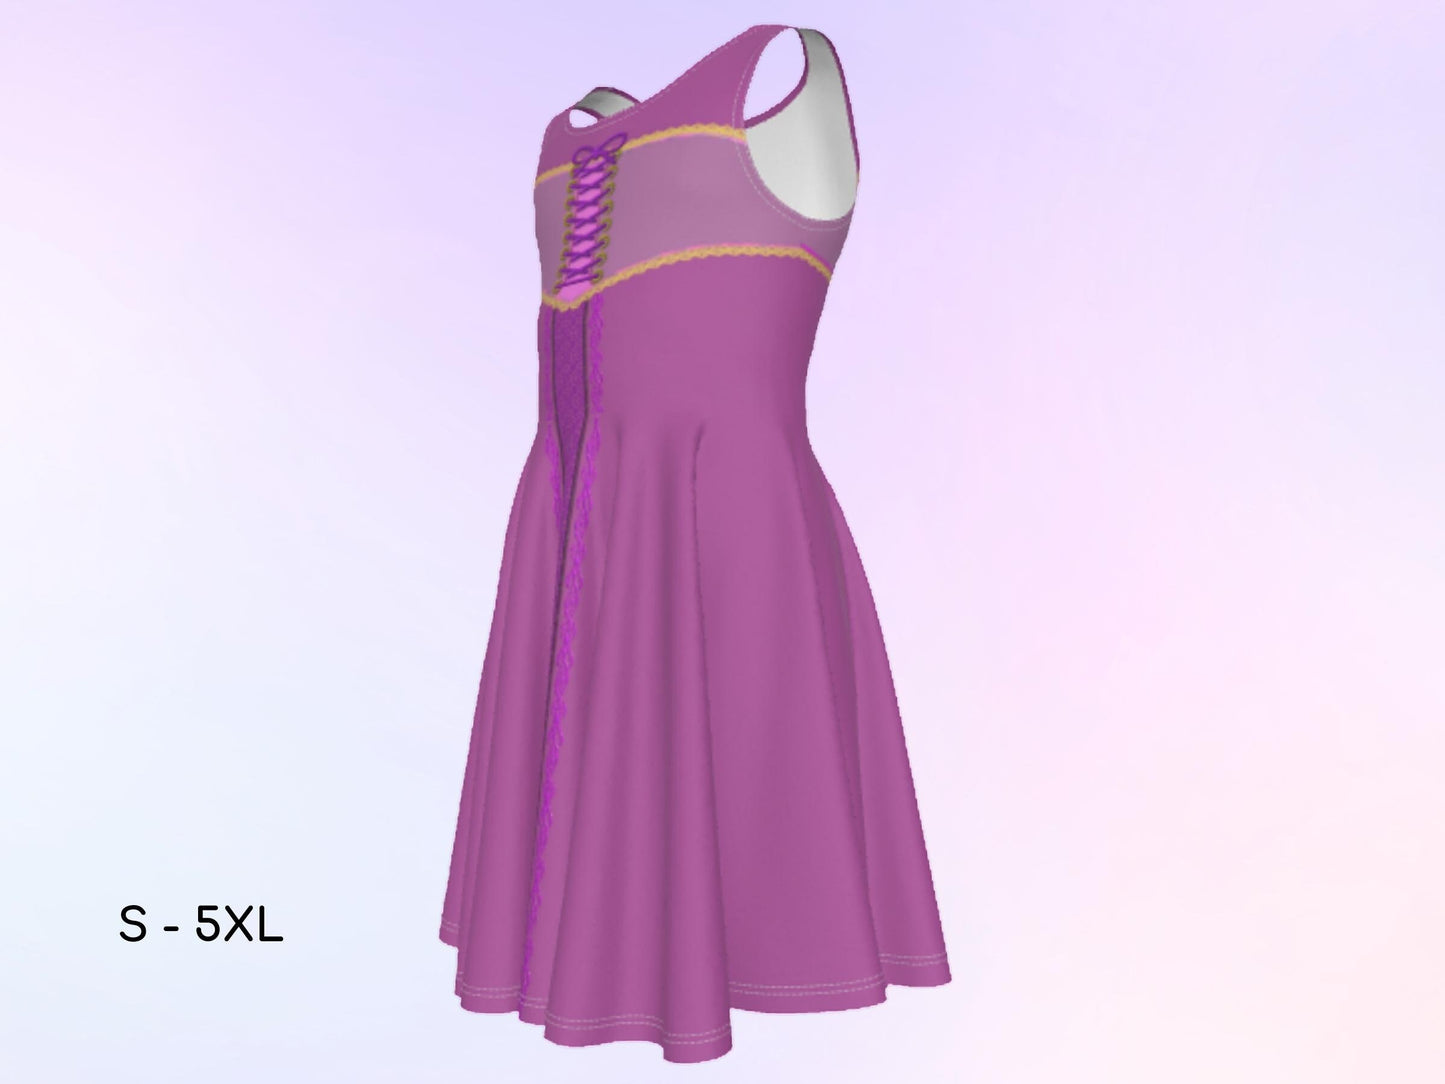 Rapunzel Girls Inspired Sleeveless Skater Dress, Cosplay, Halloween Dress, Gift for Daughter, Kids Halloween Costume